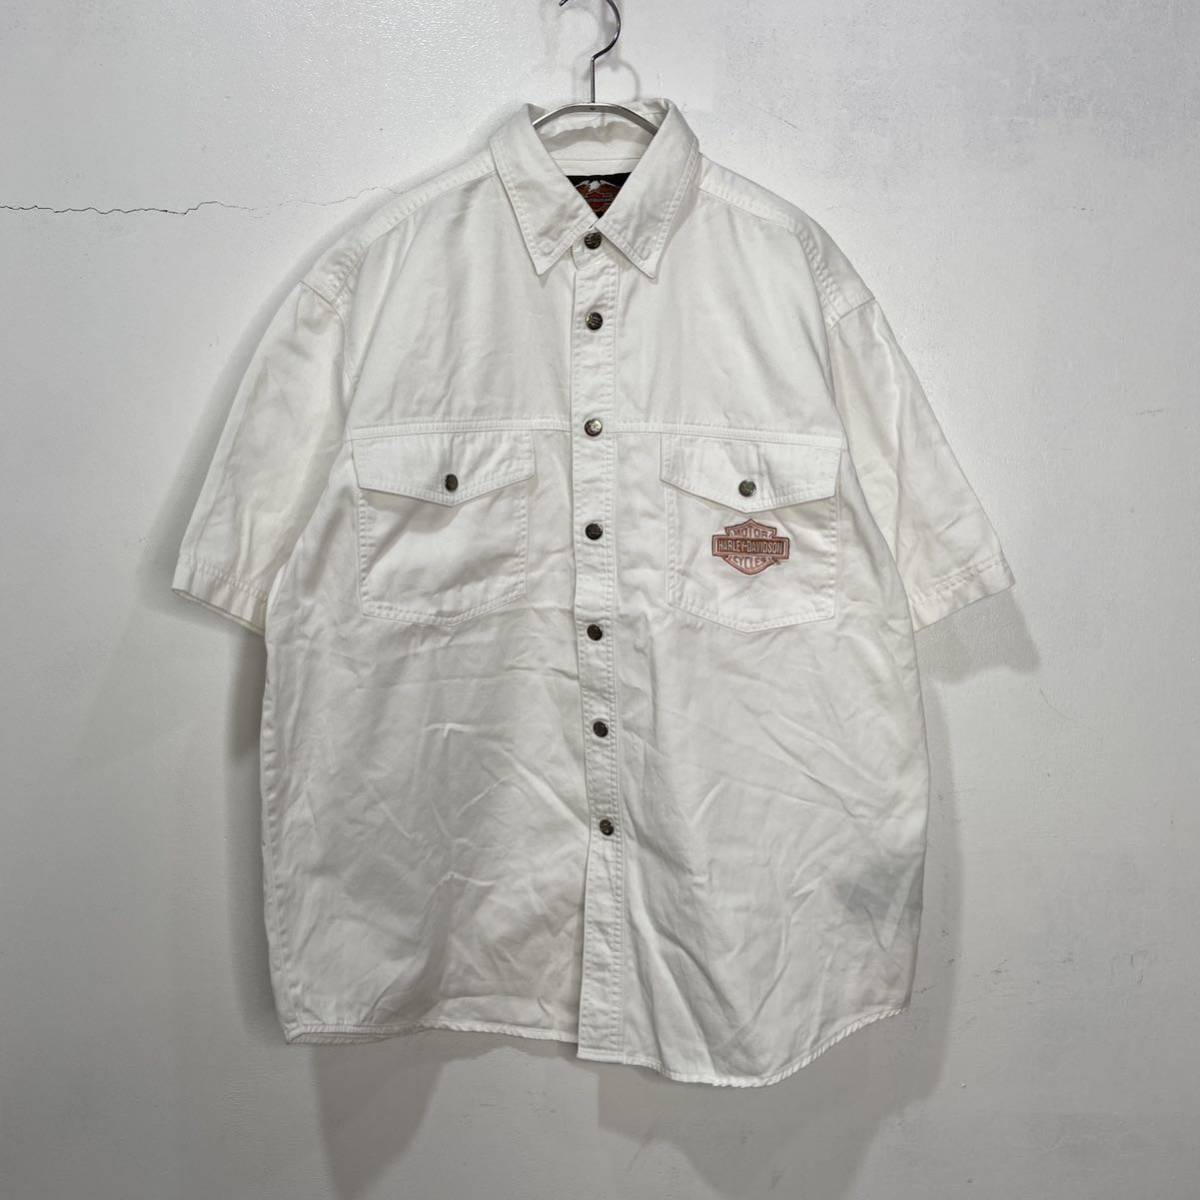 送料無料☆HARLEY-DAVIDSON☆ワンポイント刺繍ロゴ半袖シャツ☆ホワイト☆L